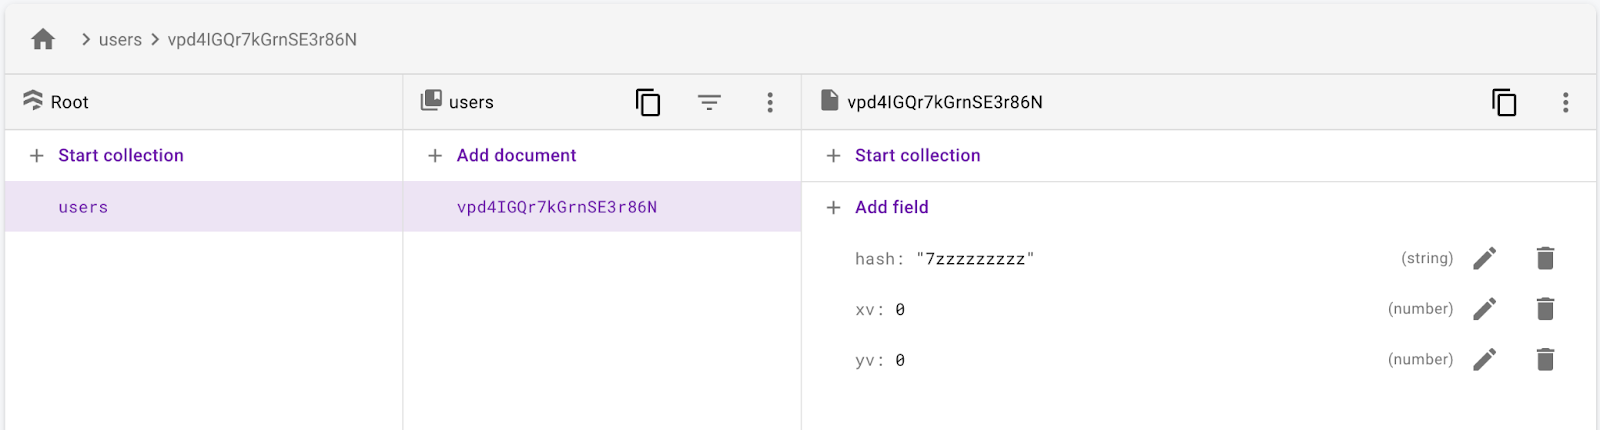 אוסף המשתמשים עם מסמך משתמש הכולל שדה xv, yv ו-hash.